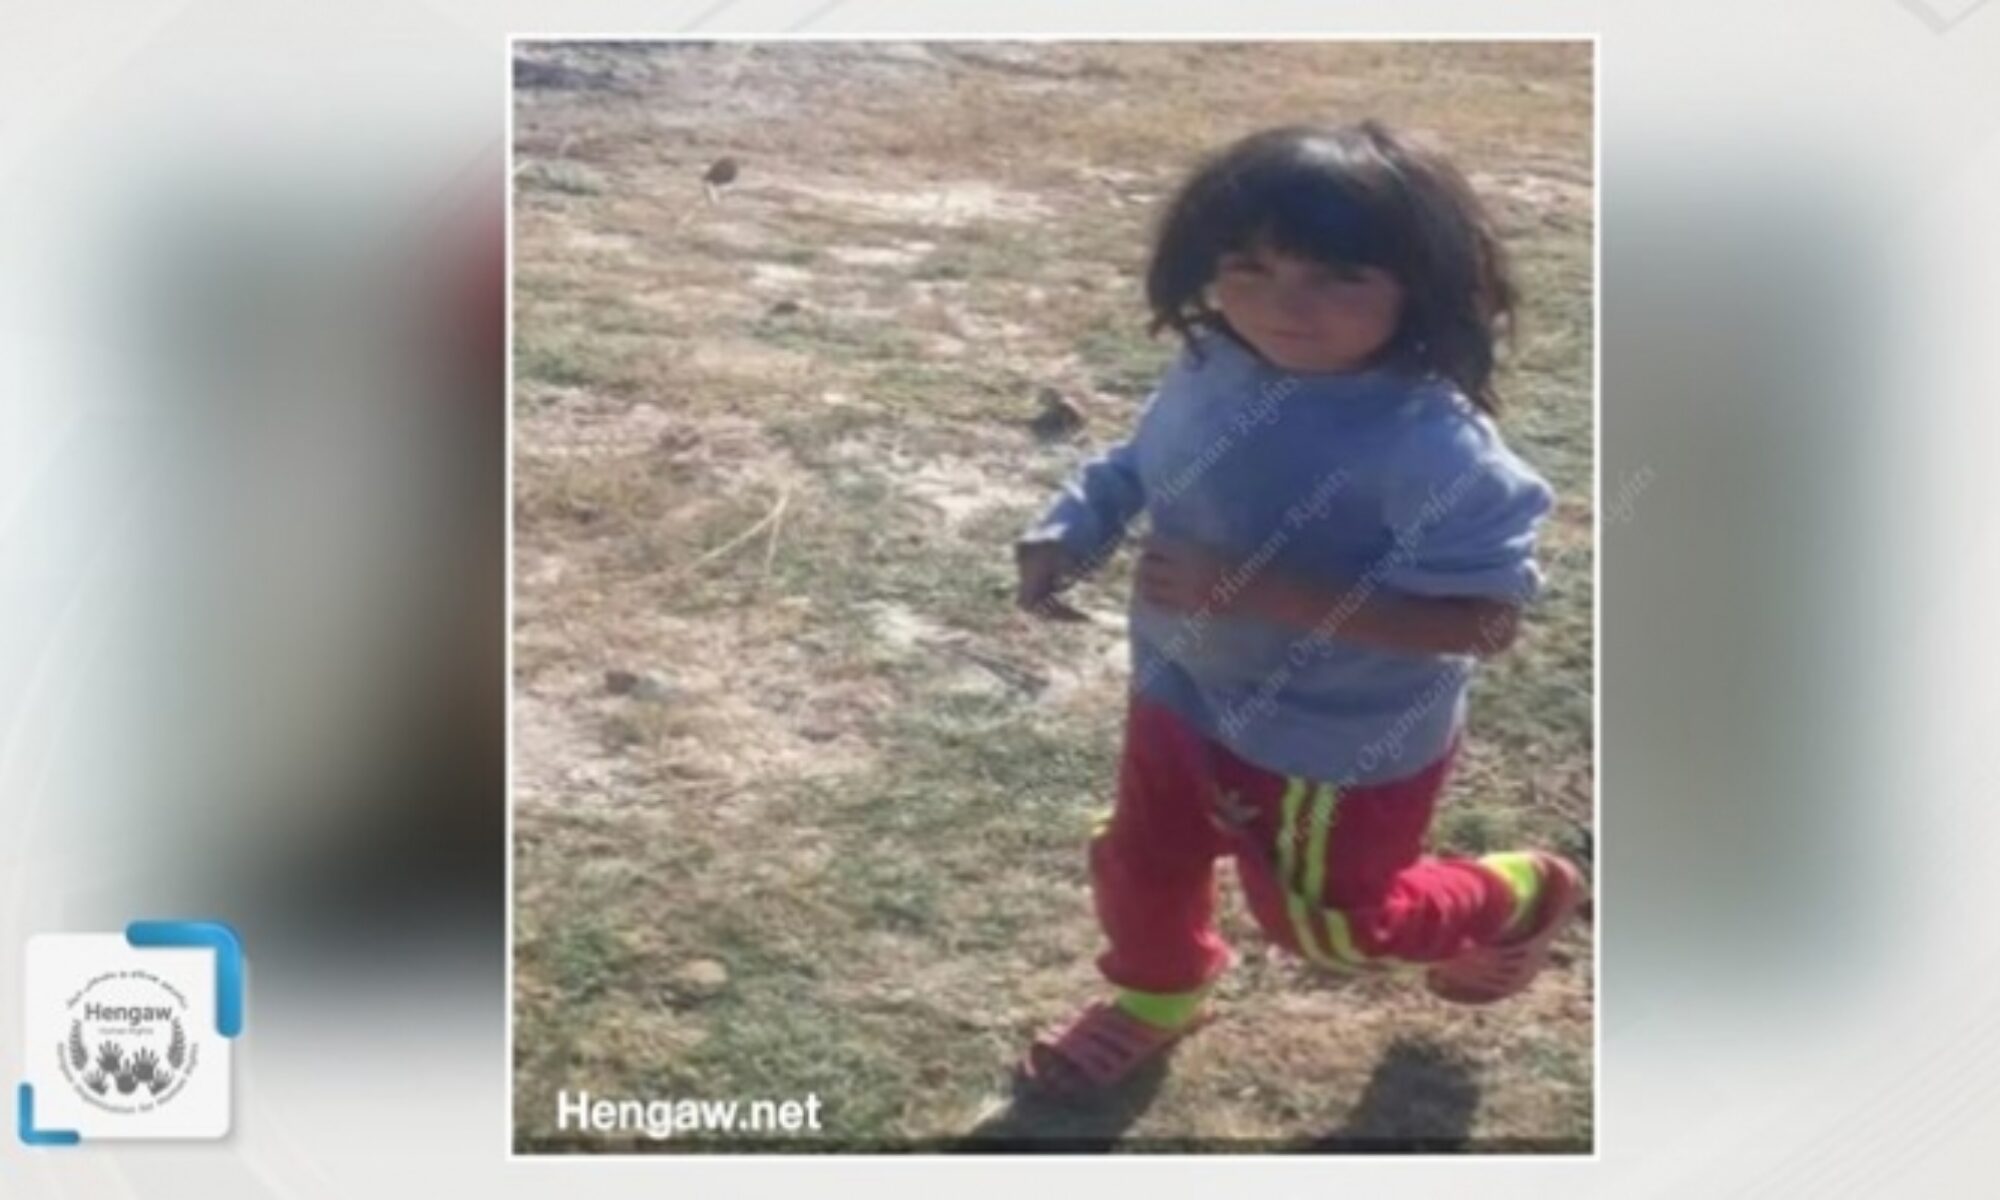 İran güvenlik güçlerinin açtığı ateş sonucu 8 yaşındaki Kürt çocuk hayatını kaybetti